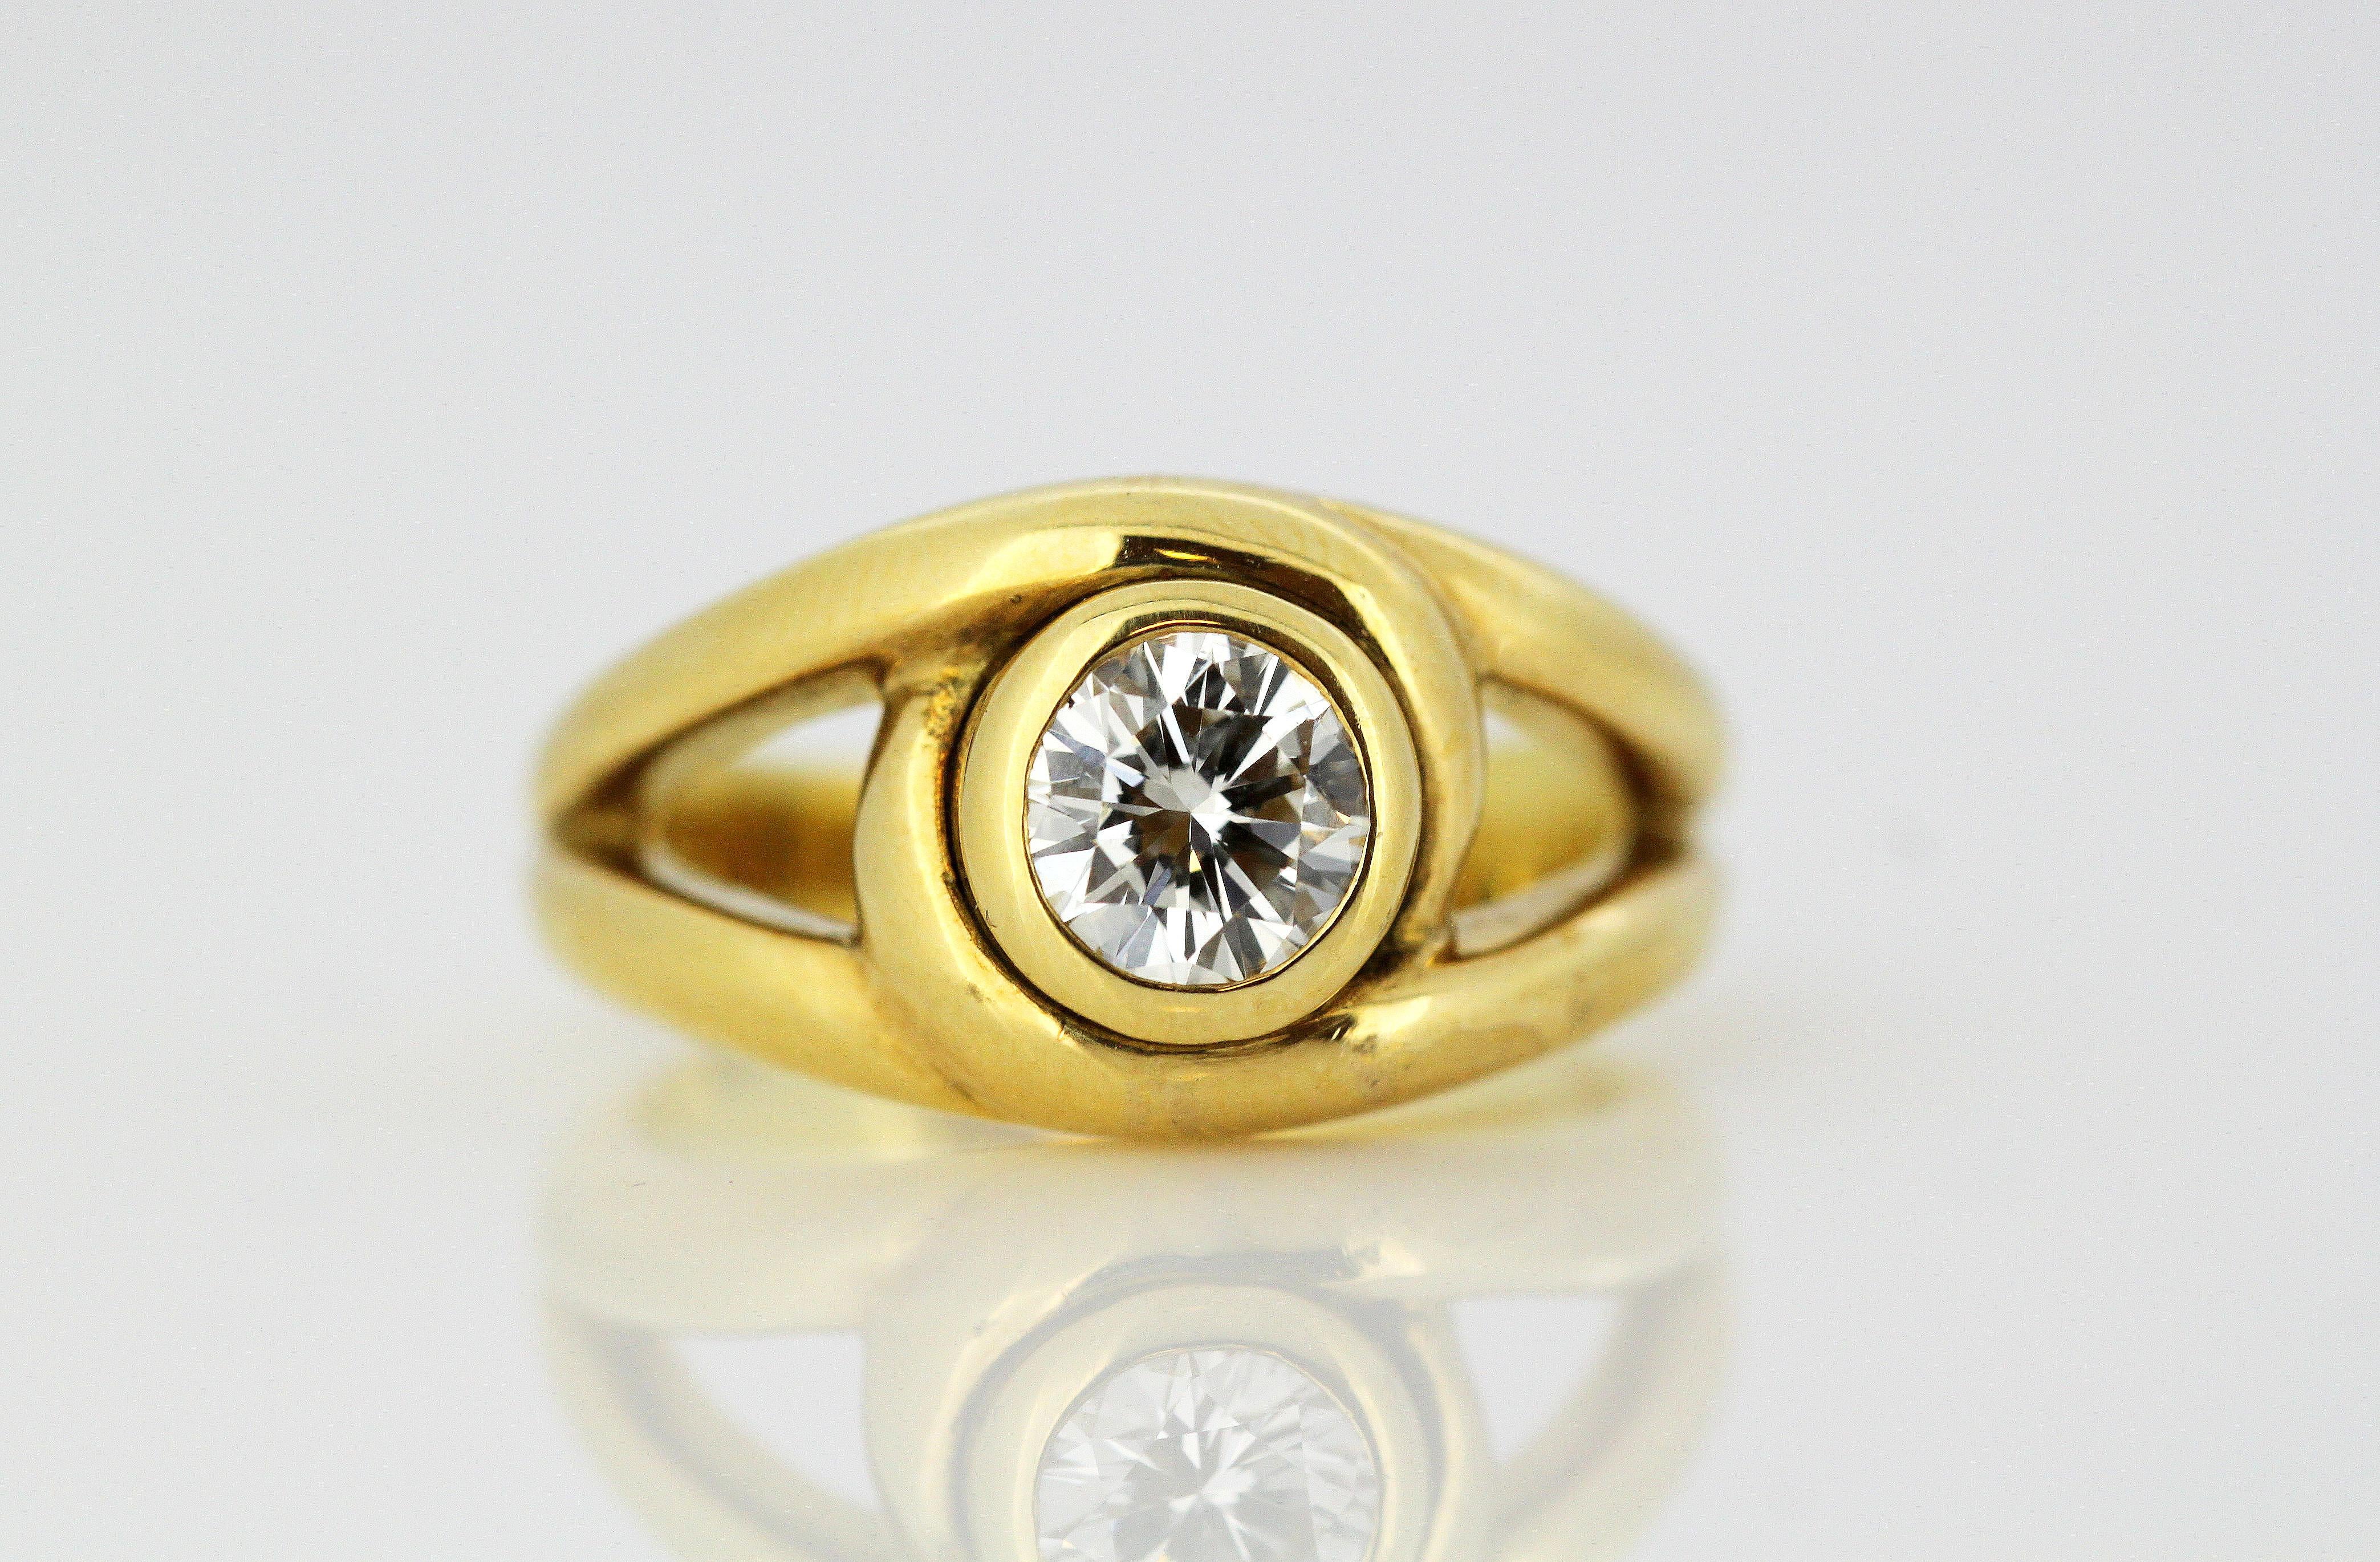 Cartier 18 Karat Gold Ladies Ring with 0.58 Carat Diamond, Cartier, Paris 4